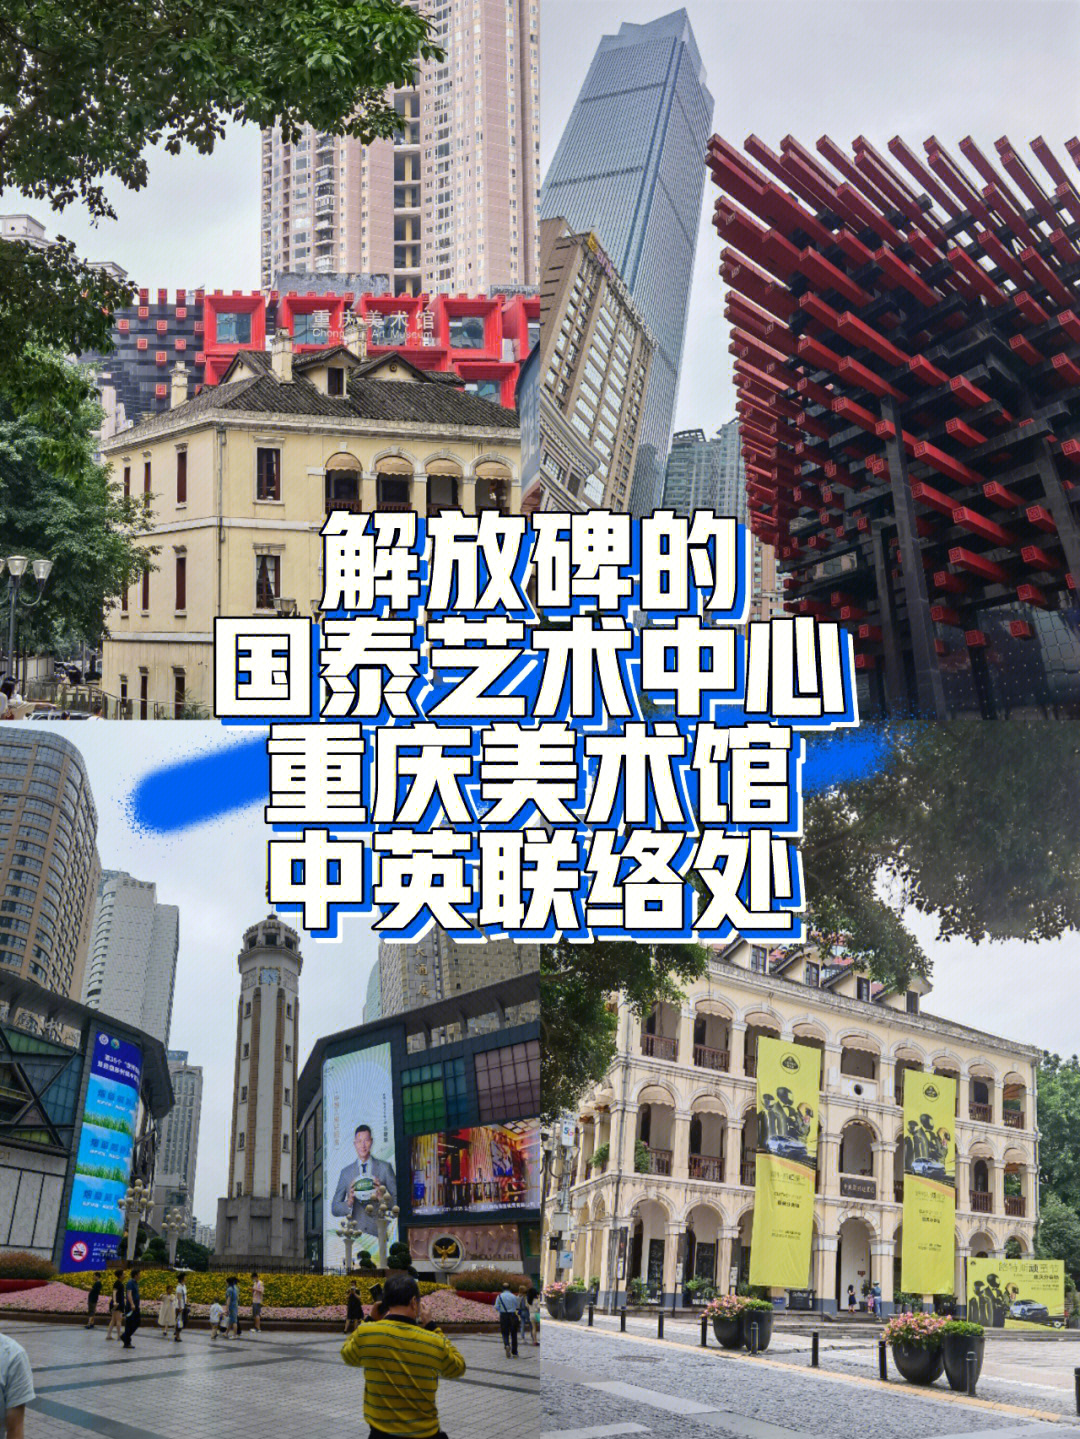 重庆国泰艺术中心售票图片